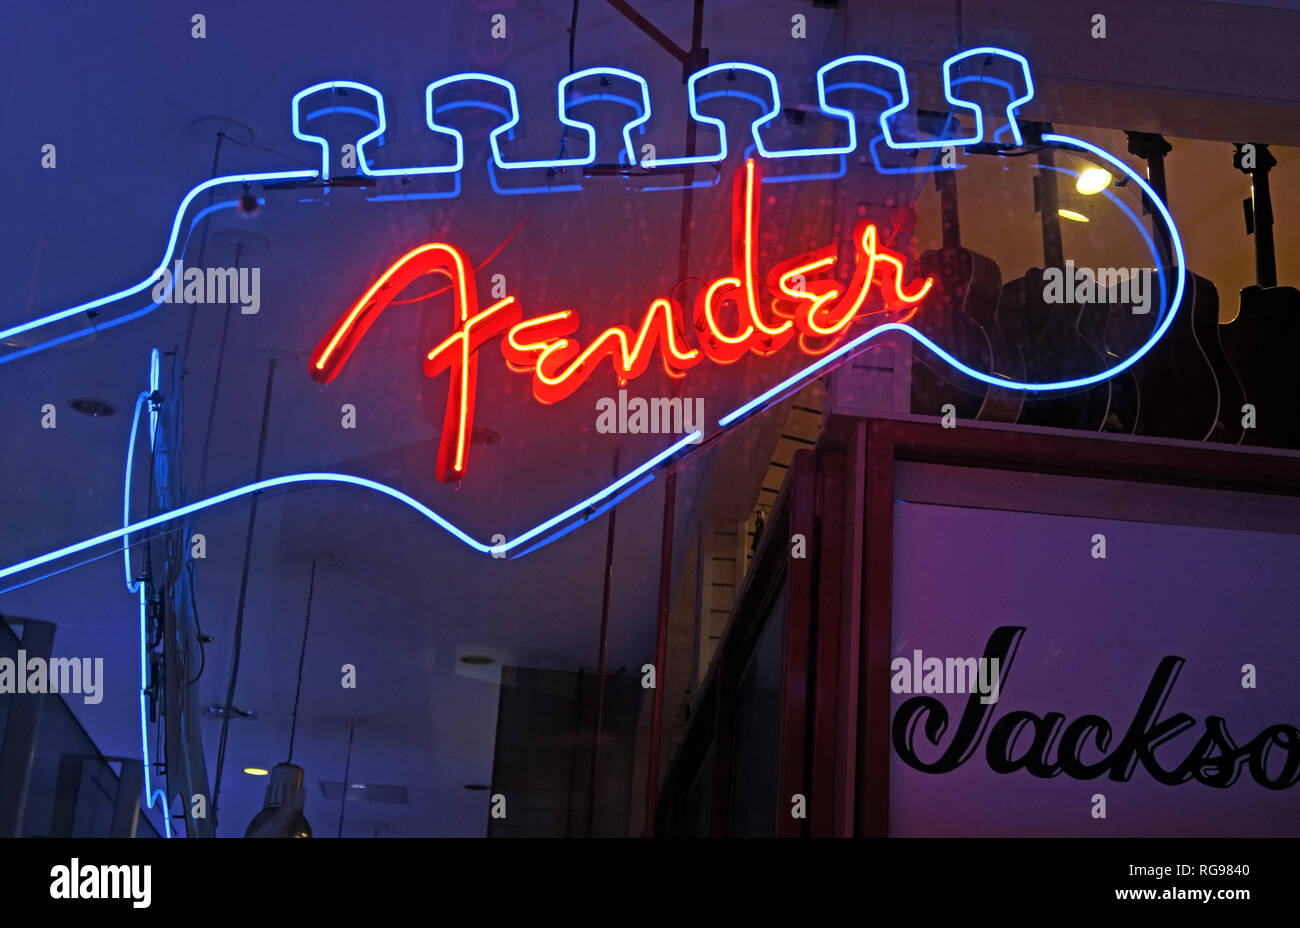 Fender Gitarre Leuchtreklame in Blau und Rot/Orange, in einer Musik Shop Stockfoto